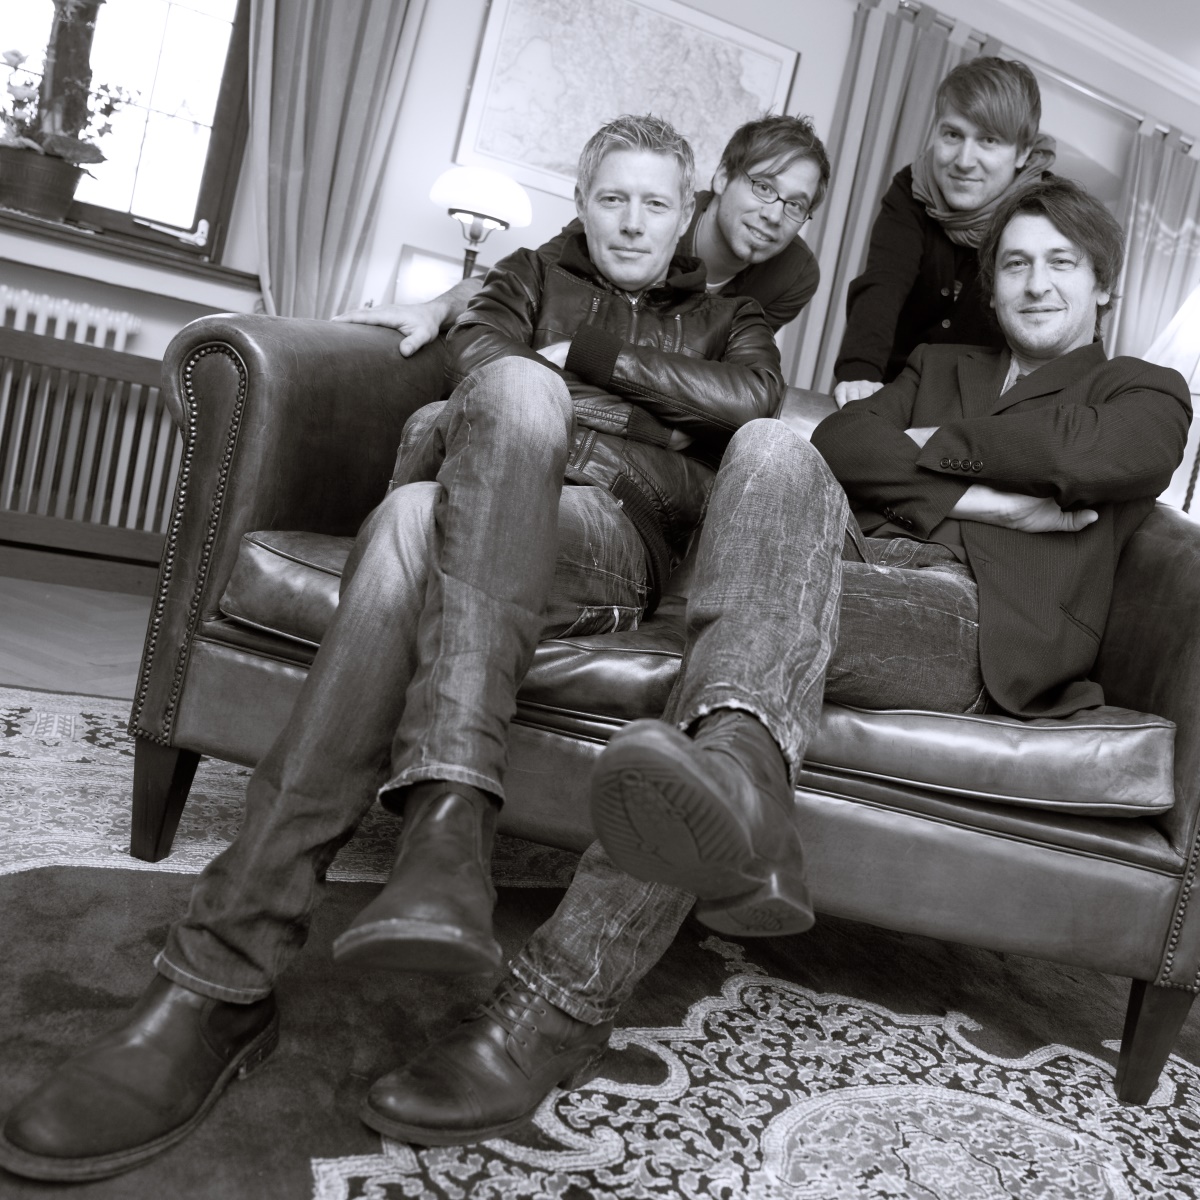 4tones - Liveband auf der Terrasse des Gasthofs Bad 9Brunnen